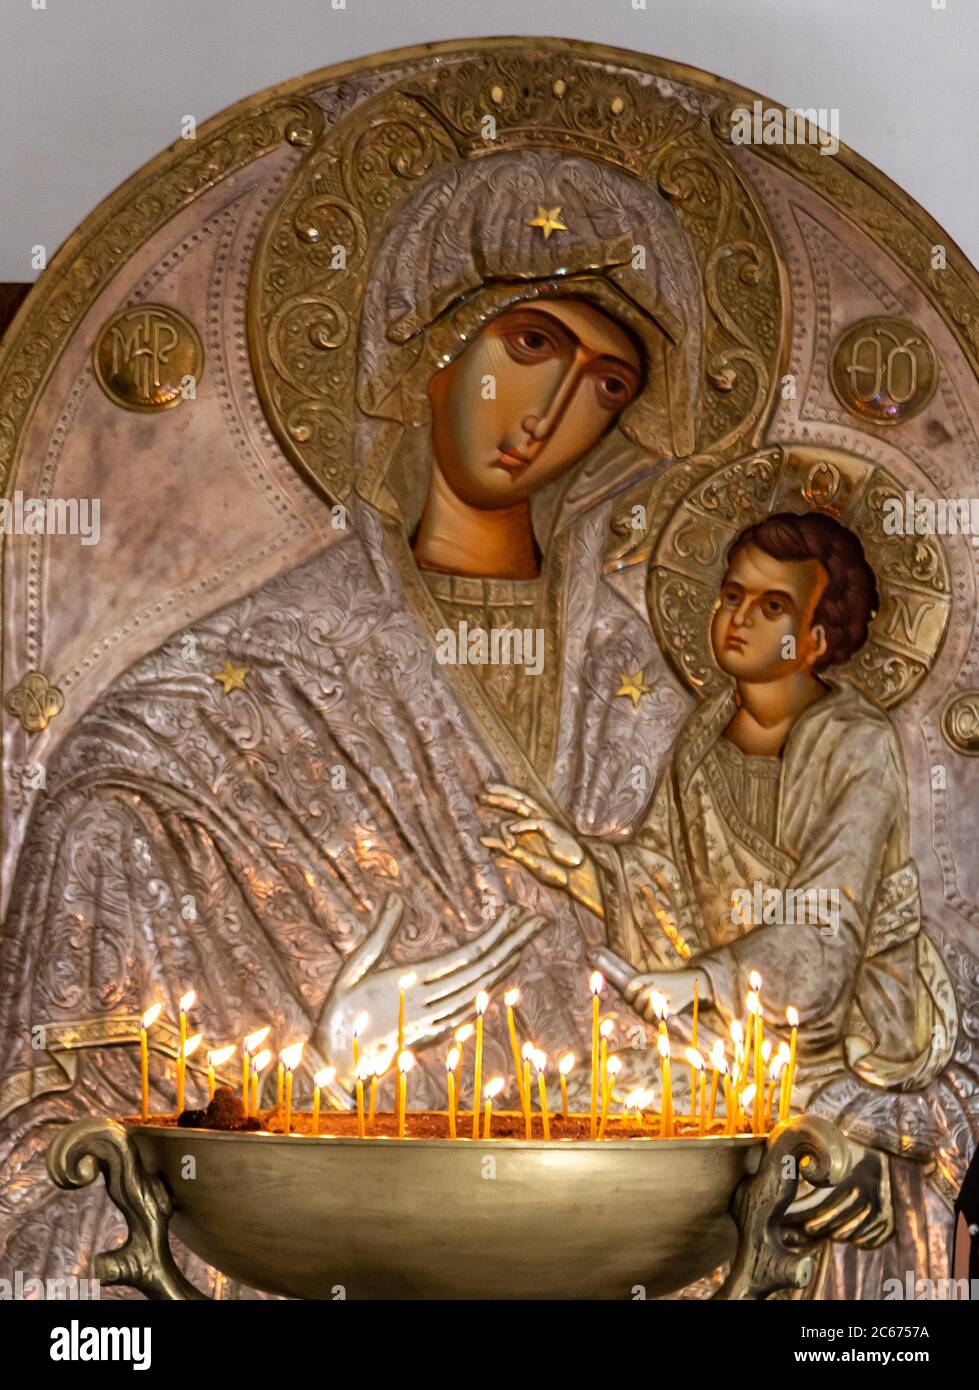 Das Kloster von St.Nino in Bodbe ist georgisch-orthodox. Innen von alten goldenen Ikone von Maria und Jesus mit Votivkerzen vor. Sehr spirituell Stockfoto